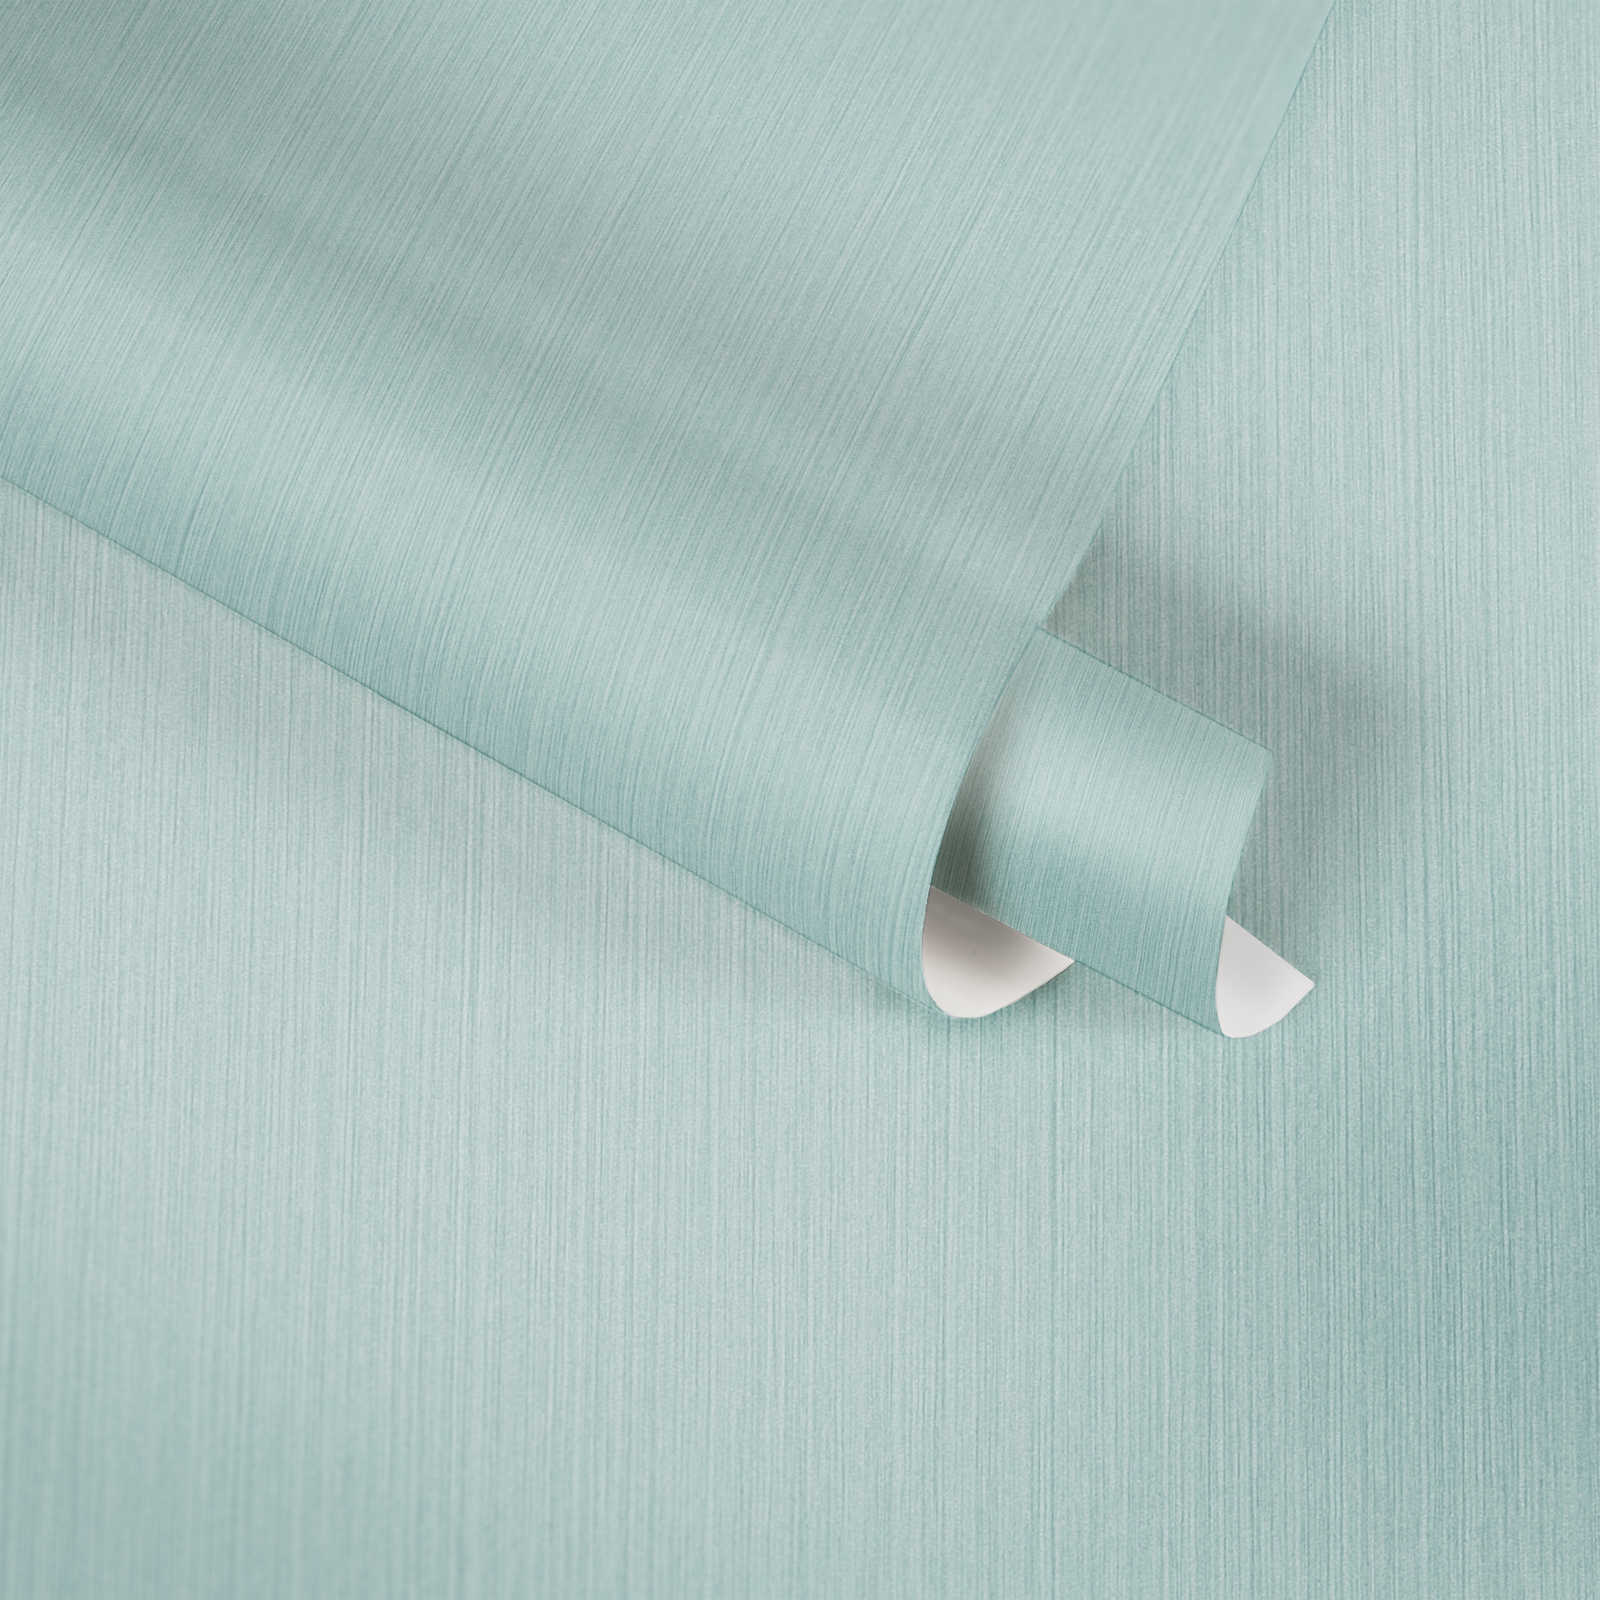             Papel pintado liso azul claro con efecto textil moteado de MICHALSKY
        